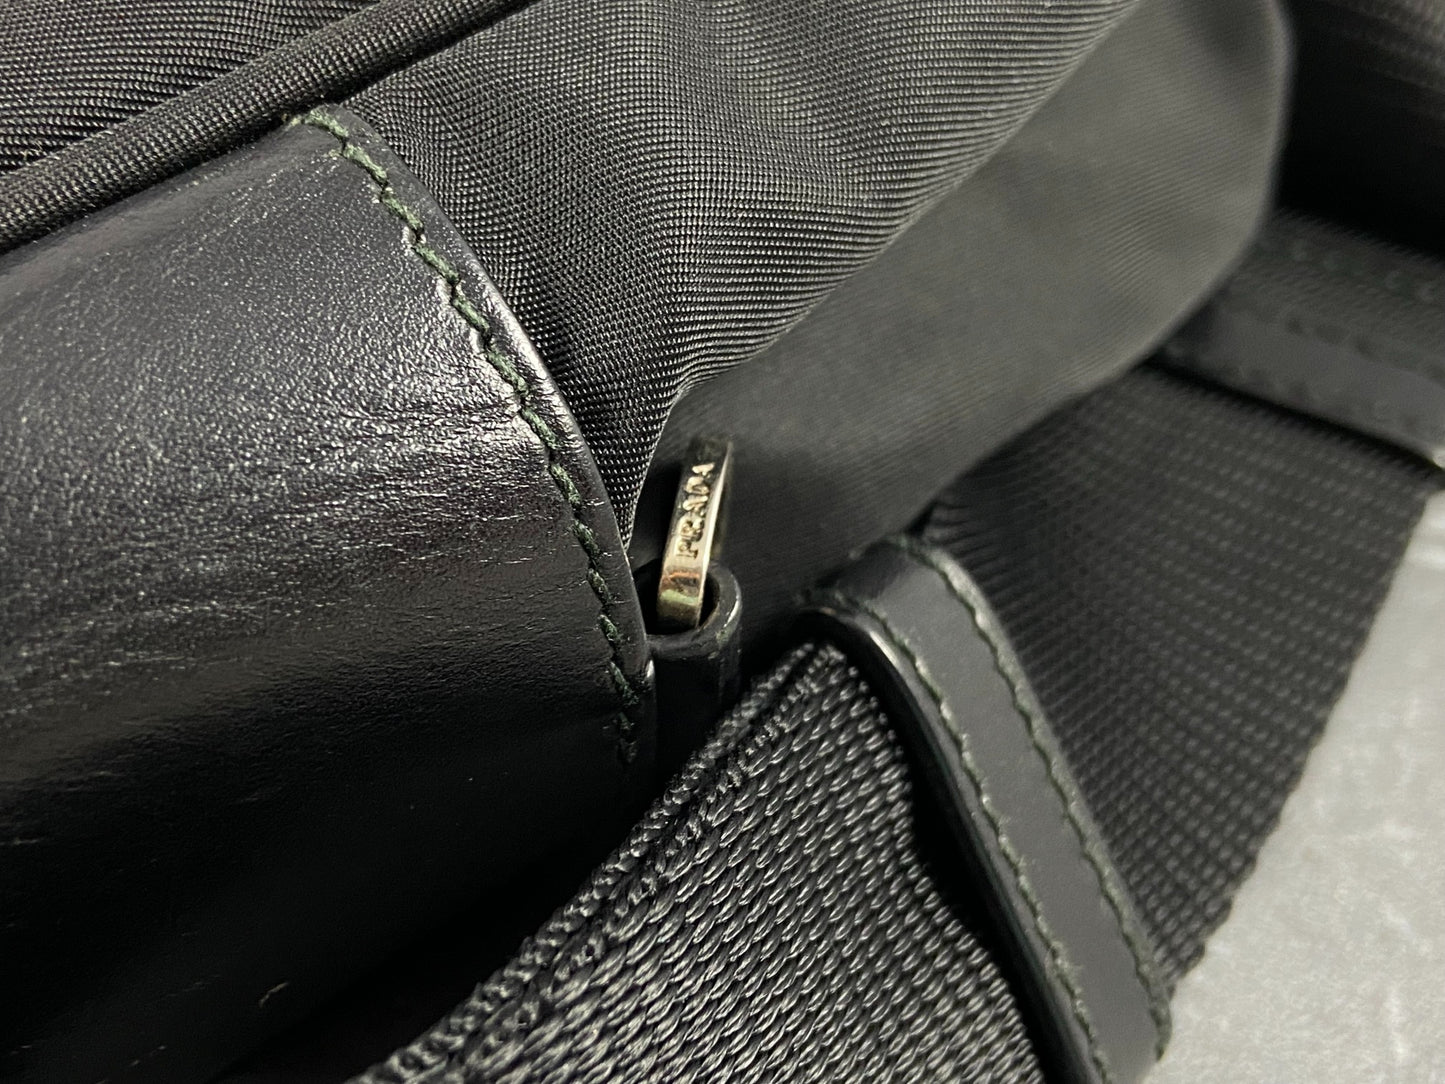 Prada BT0167 Vela Sport Nylon Shoulder / Messenger Bag Black